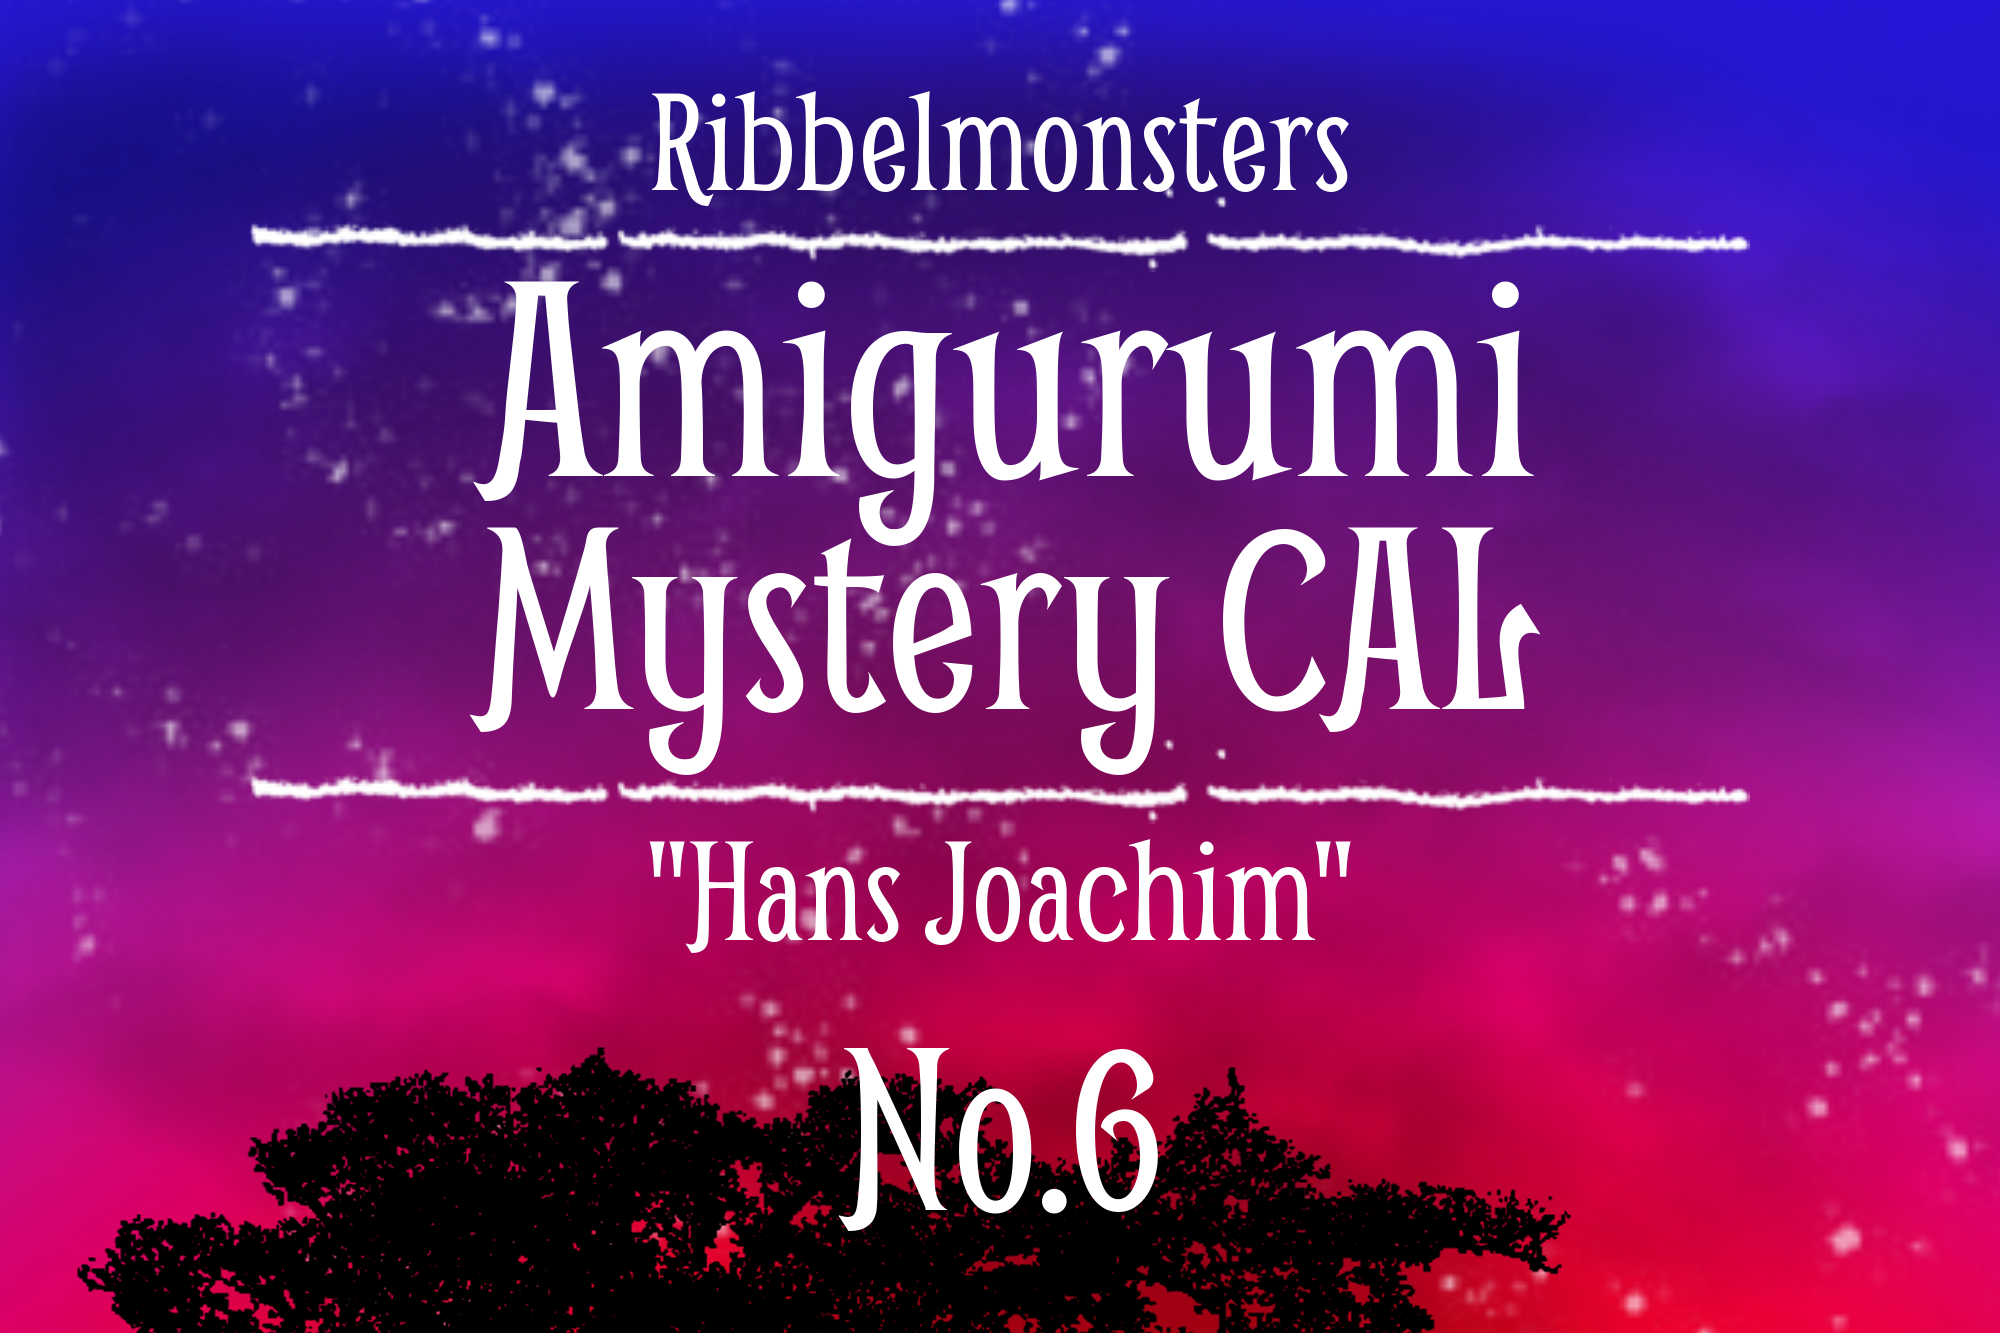 Amigurumi Mystery CAL – “Hans Joachim” – Part 6